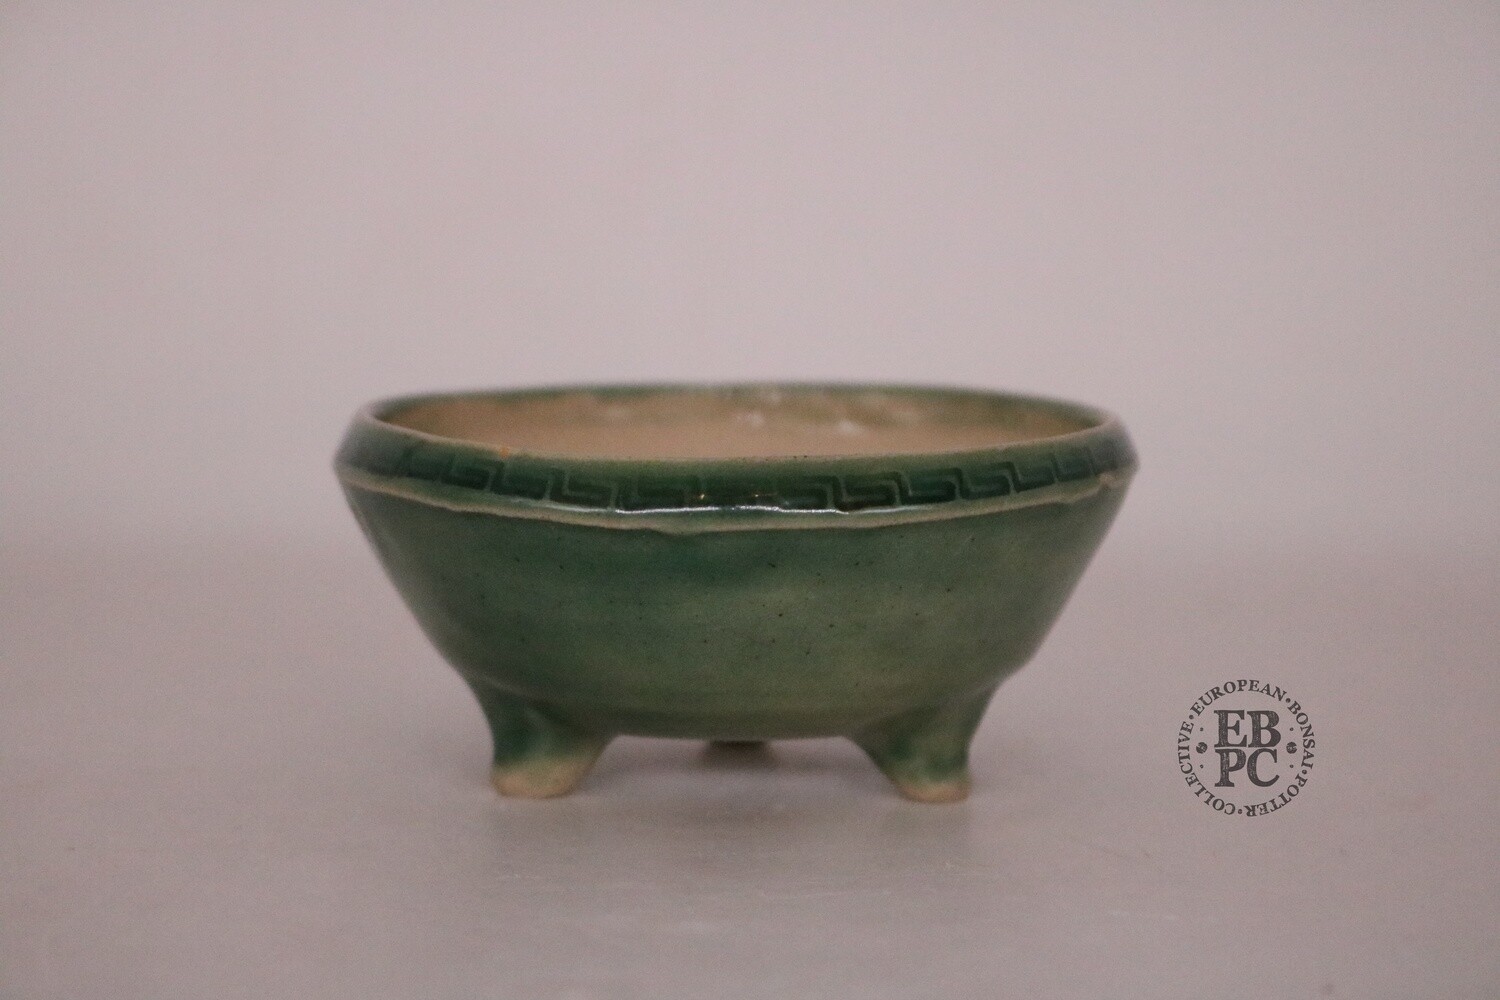 SOLD - Amdouni Bonsai Pots - 9.4cm; Porcelain; Celadon; 'Greek Key pattern; Round; Mame/ Accent pot; Green; Sami Amdouni